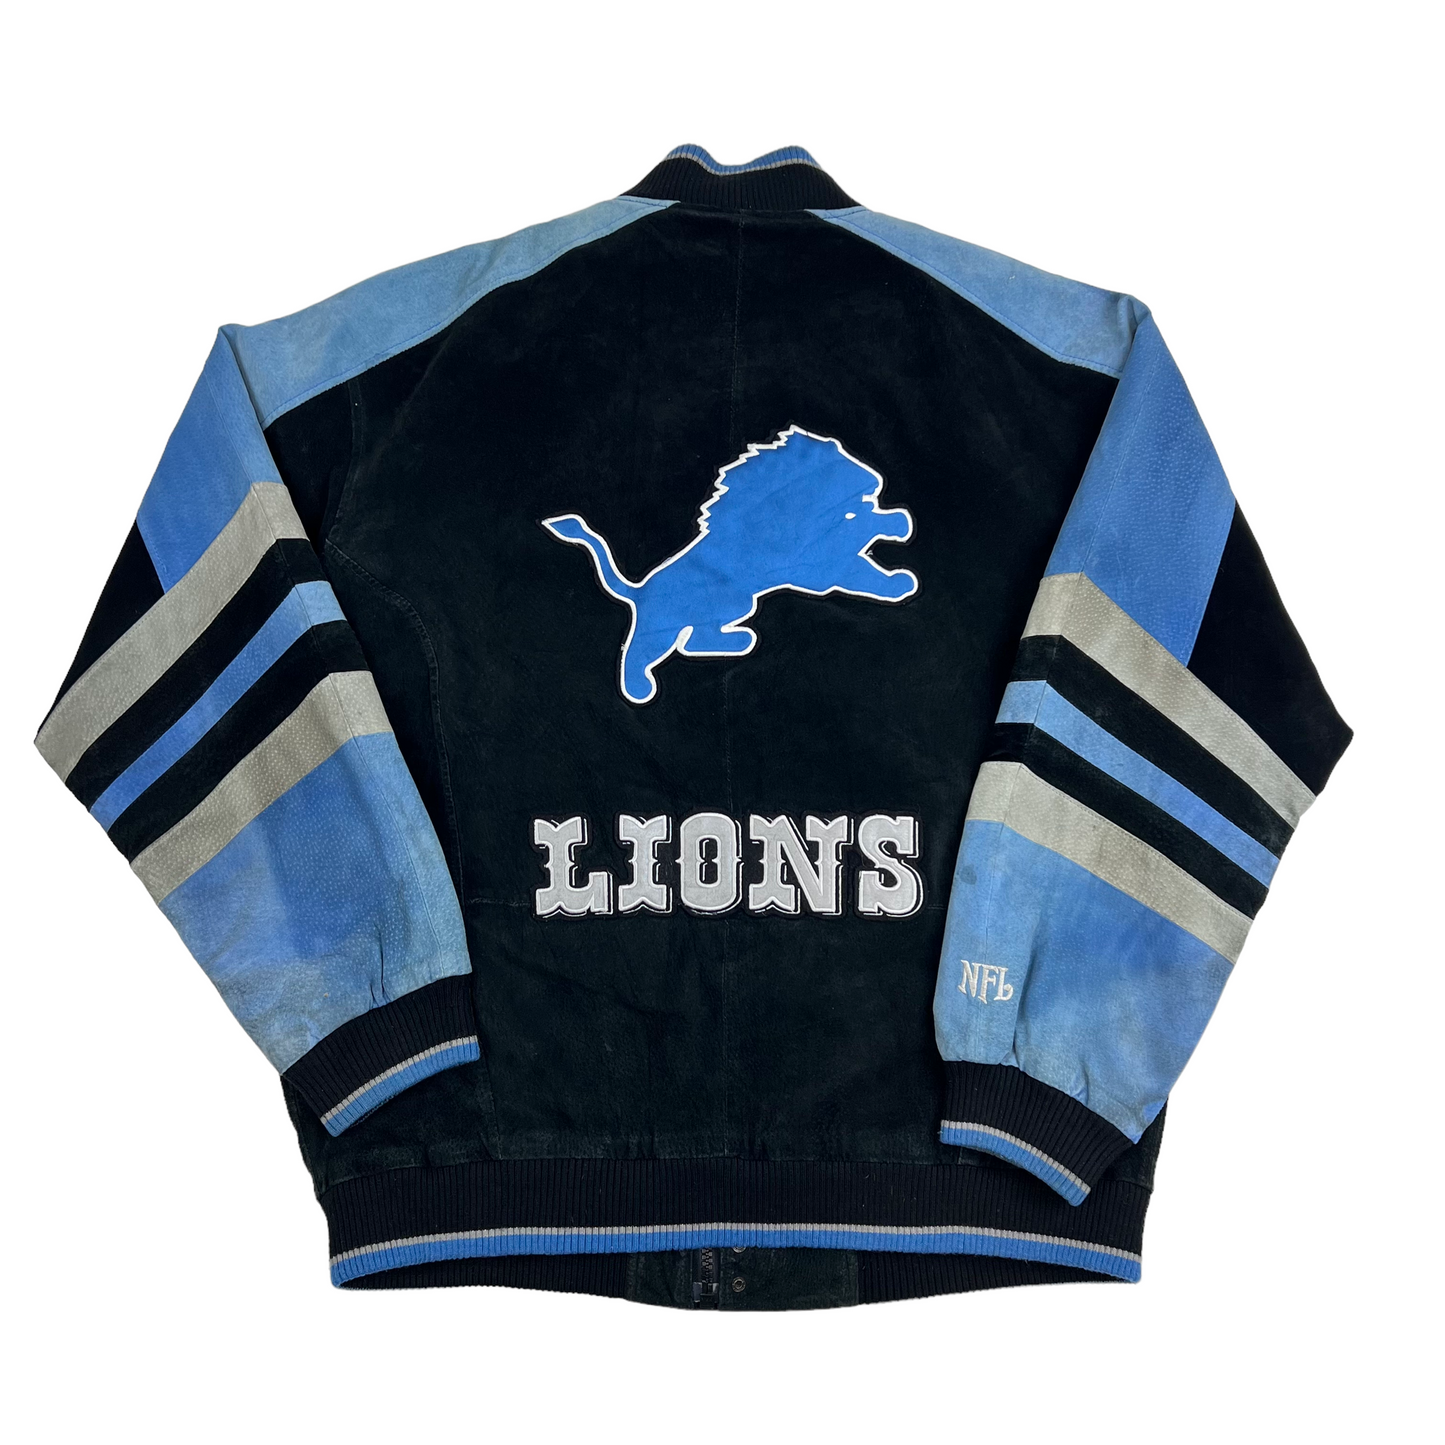 Vintage NFL Detroit Lions Suede Leather Baseball Varsity Jacket (Large)